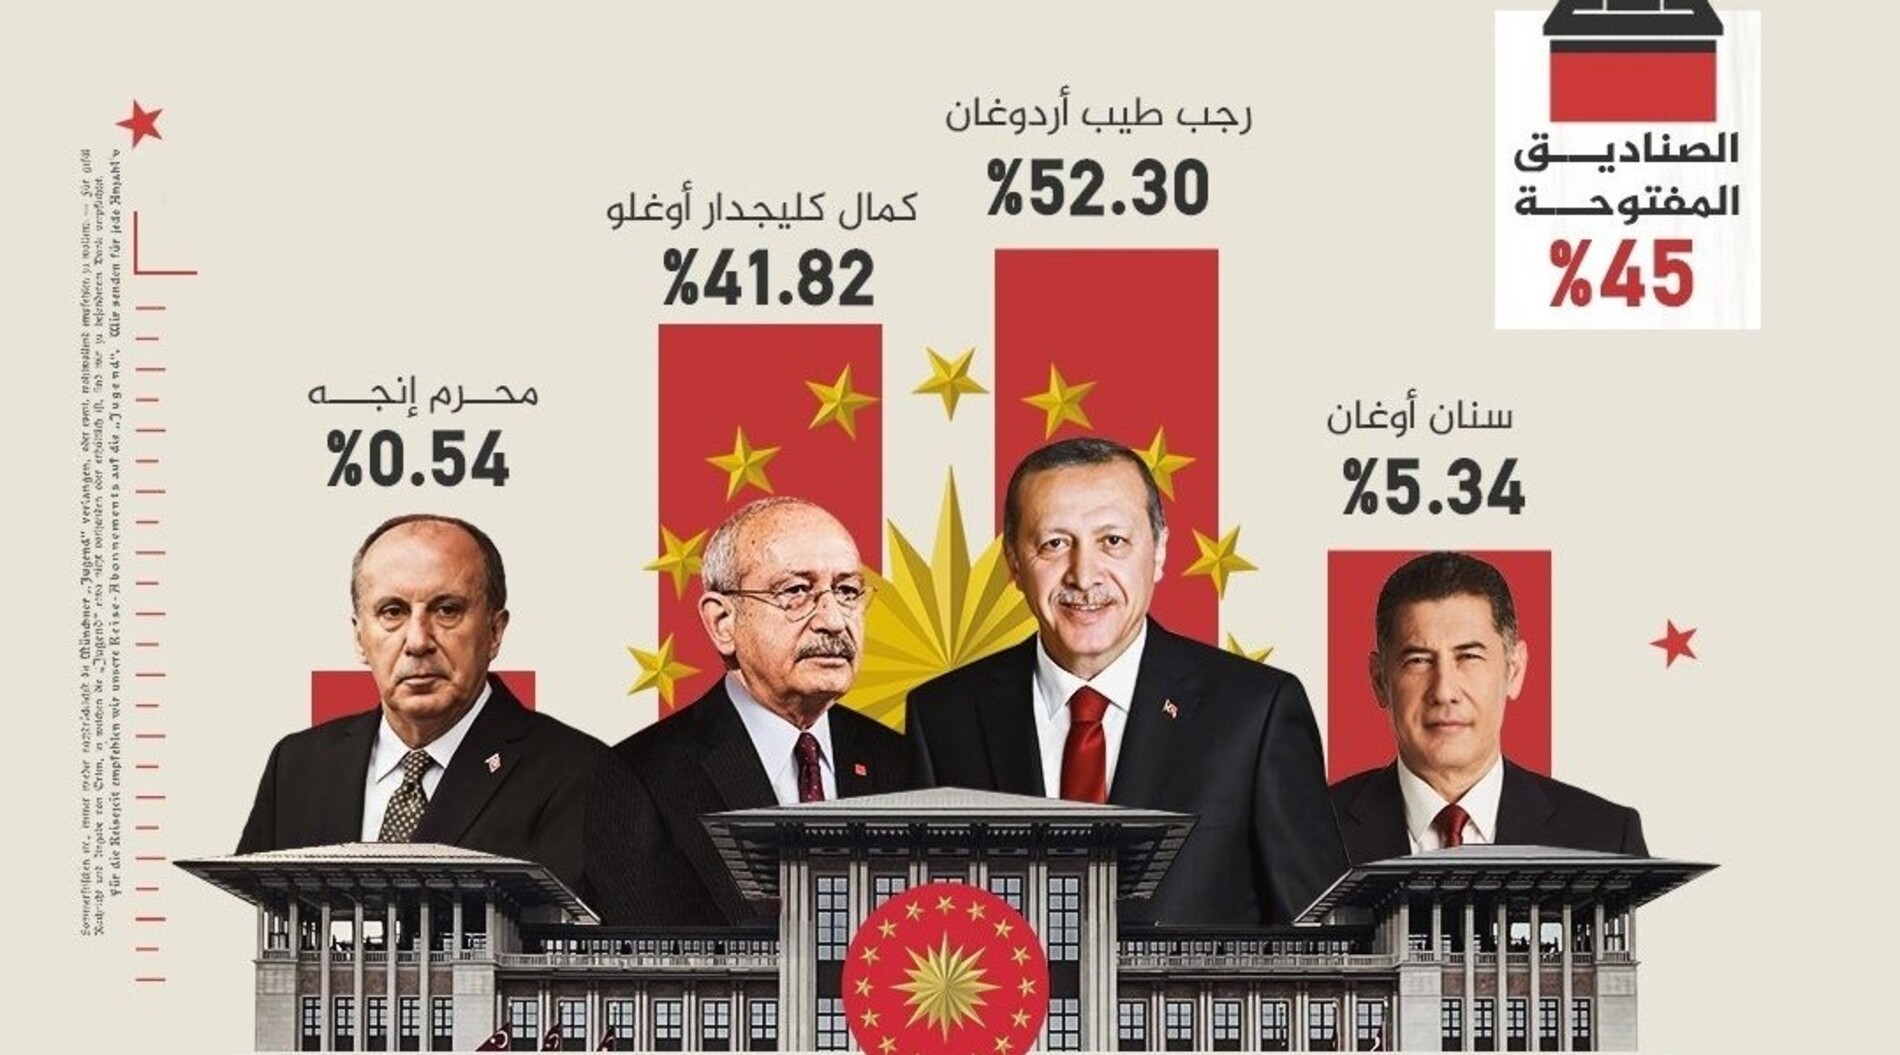 Αβέβαιο ακόμη το αποτέλεσμα στις τουρκικές εκλογές: «Προηγούμαστε» δηλώνει ο Κιλιντσάρογλου – Προβάδισμα Ερντογάν μεταδίδει το πρακτορείο Anadolu